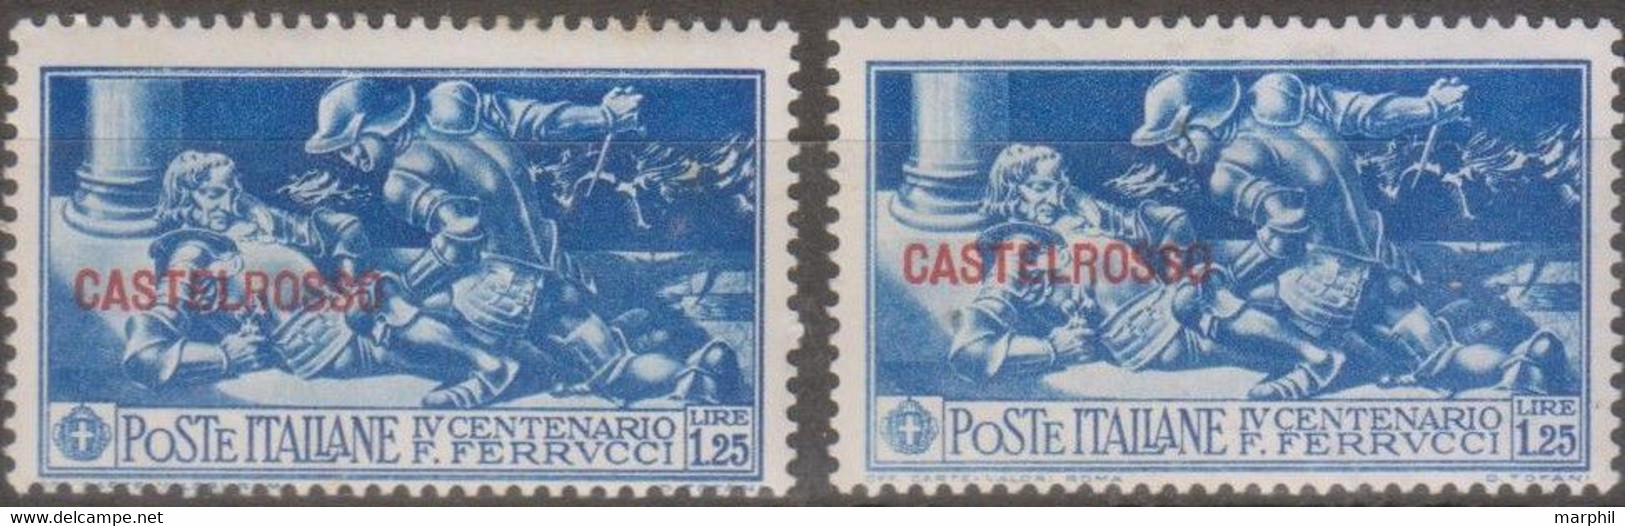 Italia Colonie Castelrosso 1930 SaN°28 2v MH/* Vedere Scansione - Castelrosso